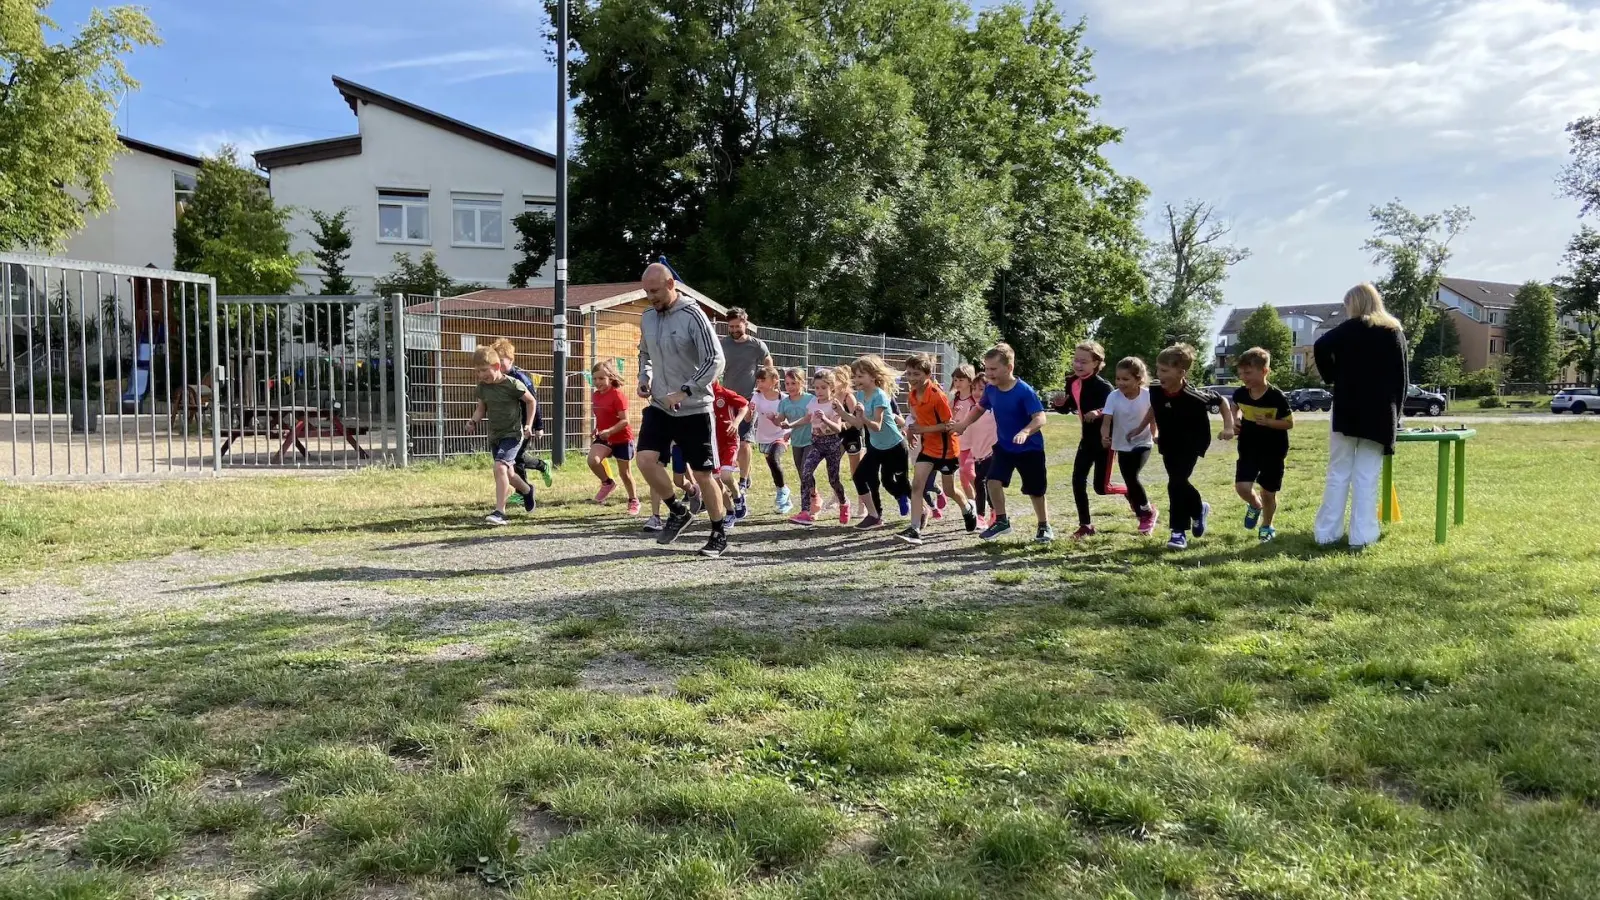 Sportlehrer Alexander Schunke startet mit den Kindern der Klasse 1b zum Sponsorenlauf. (Foto: taucha-kompakt.de)